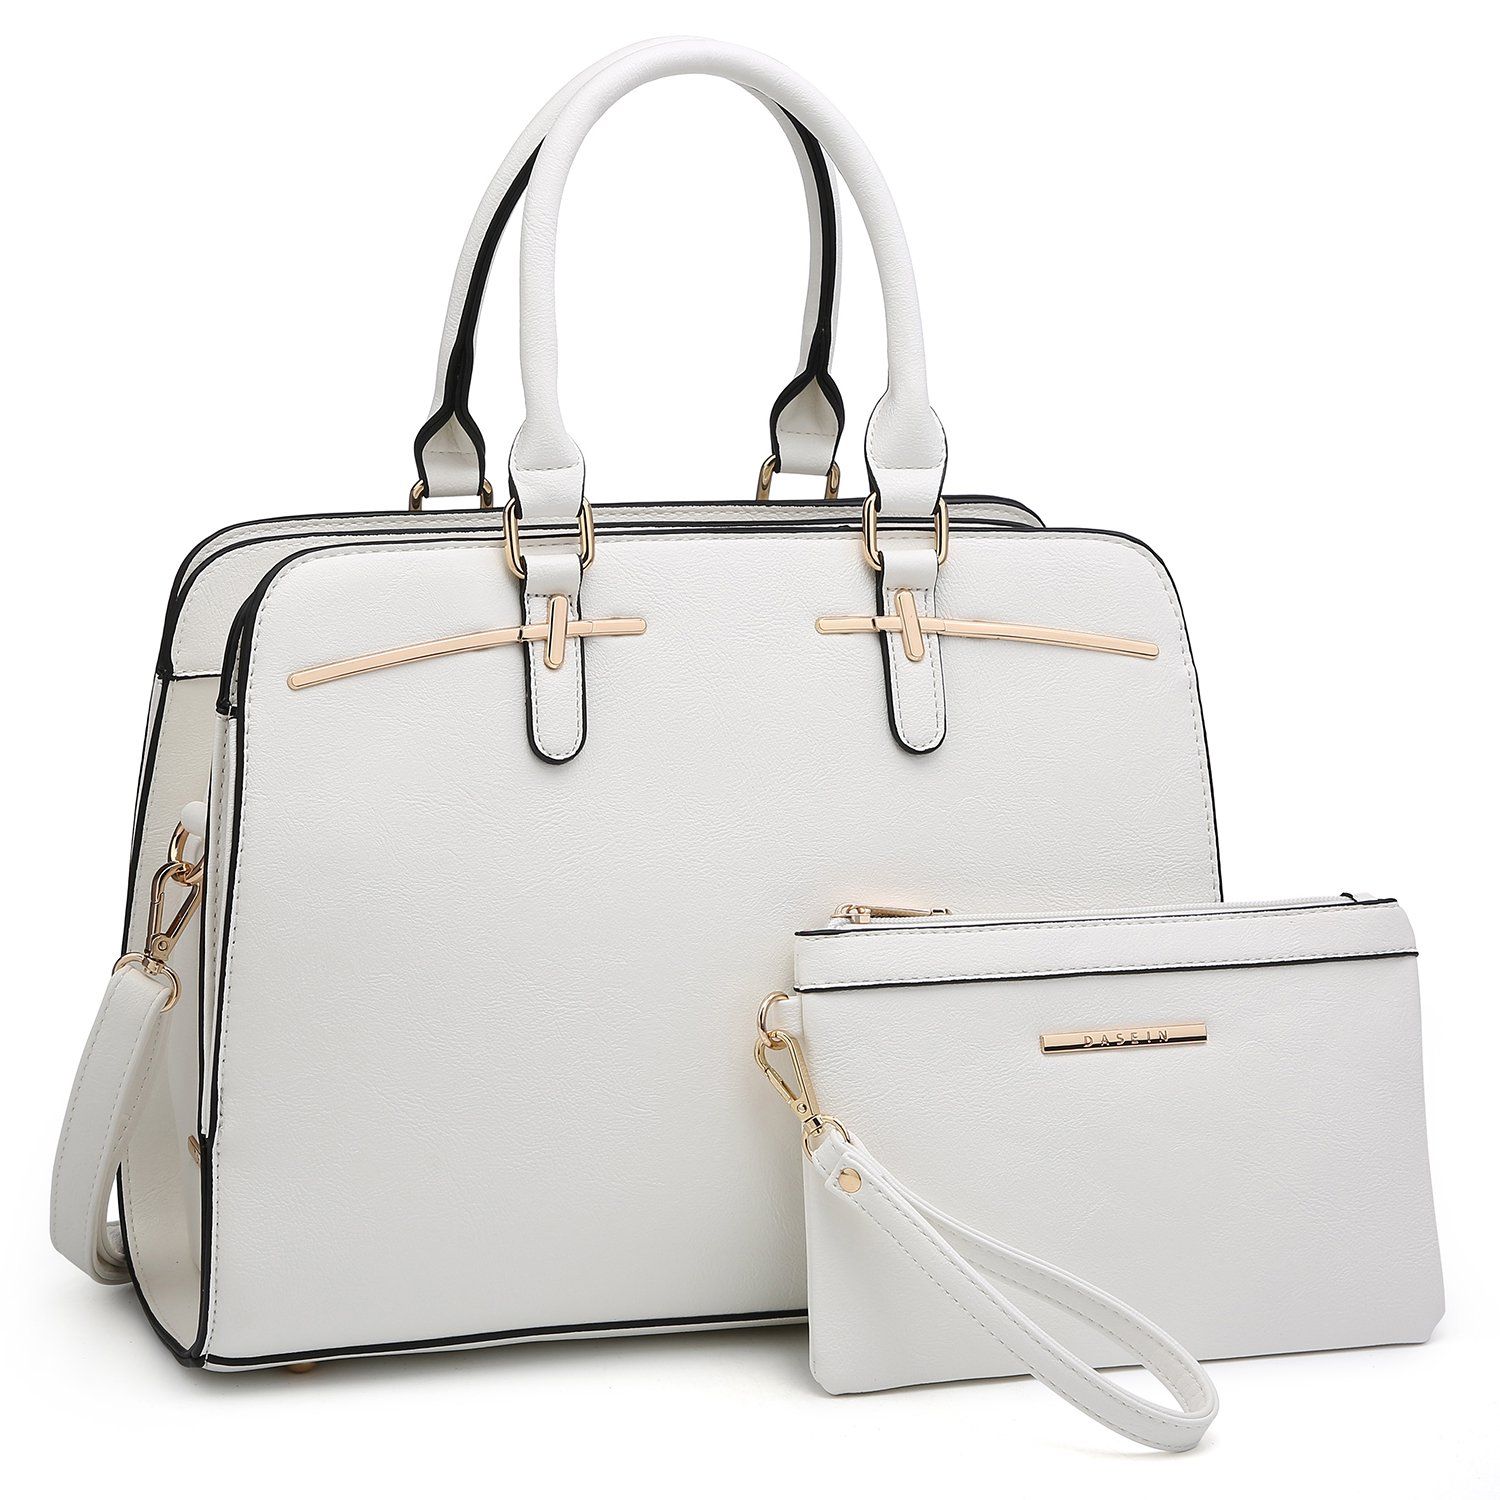 Dasein Women Satchel Handbags Shoulder Purses Totes Top Handle Work Bags With Matching Wallet | Walmart (US)